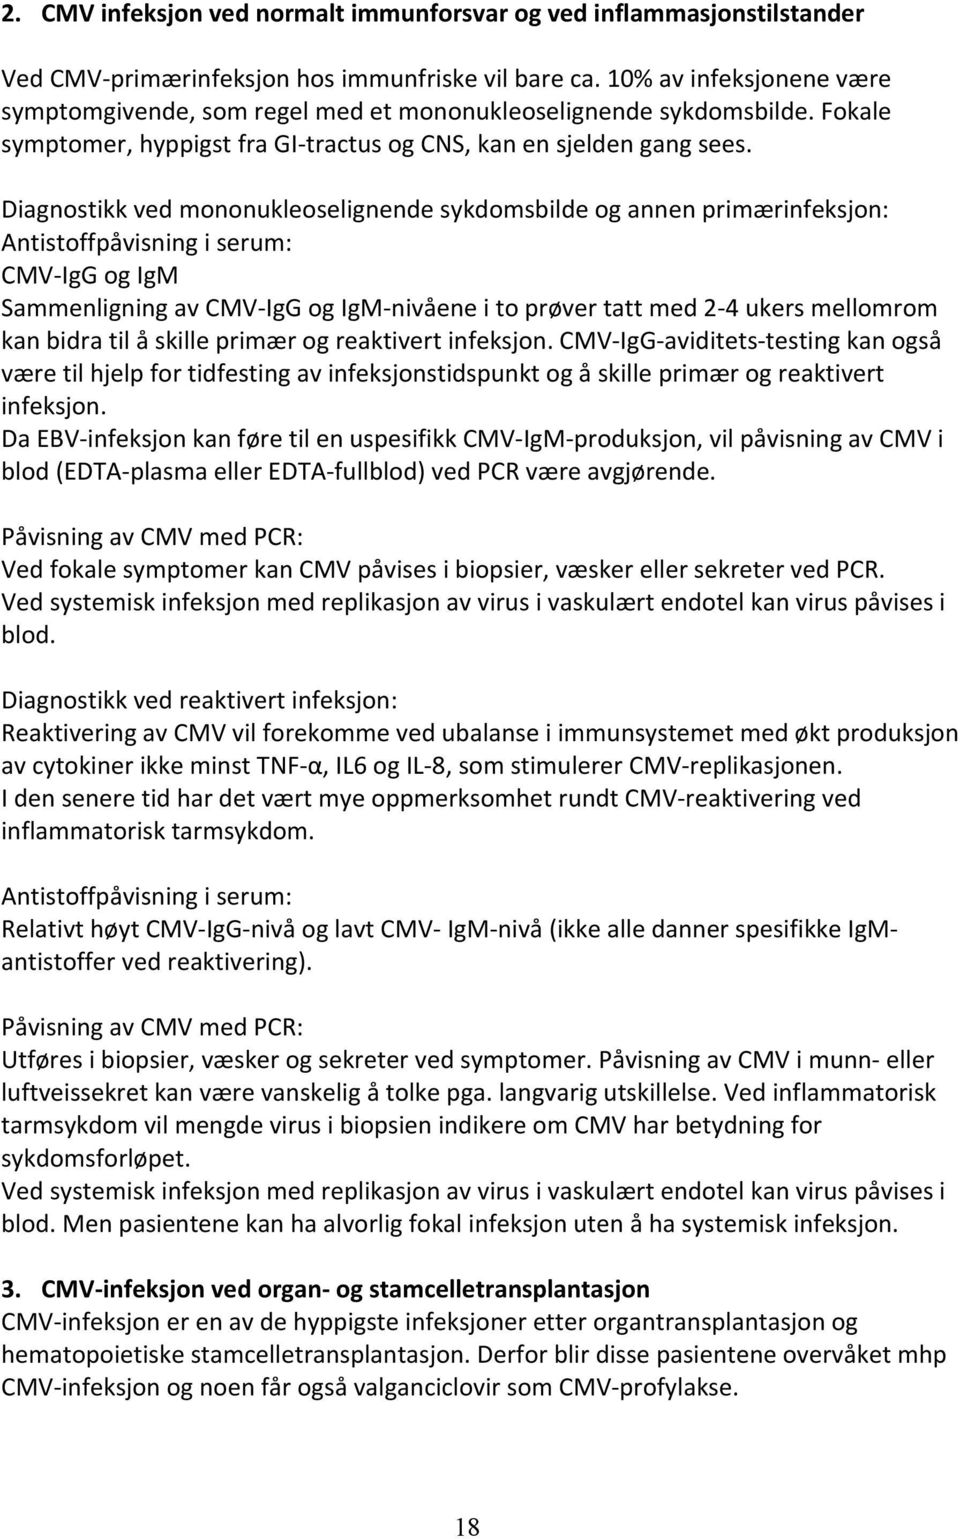 Diagnostikk ved mononukleoselignende sykdomsbilde og annen primærinfeksjon: Antistoffpåvisning i serum: CMV- IgG og IgM Sammenligning av CMV- IgG og IgM- nivåene i to prøver tatt med 2-4 ukers